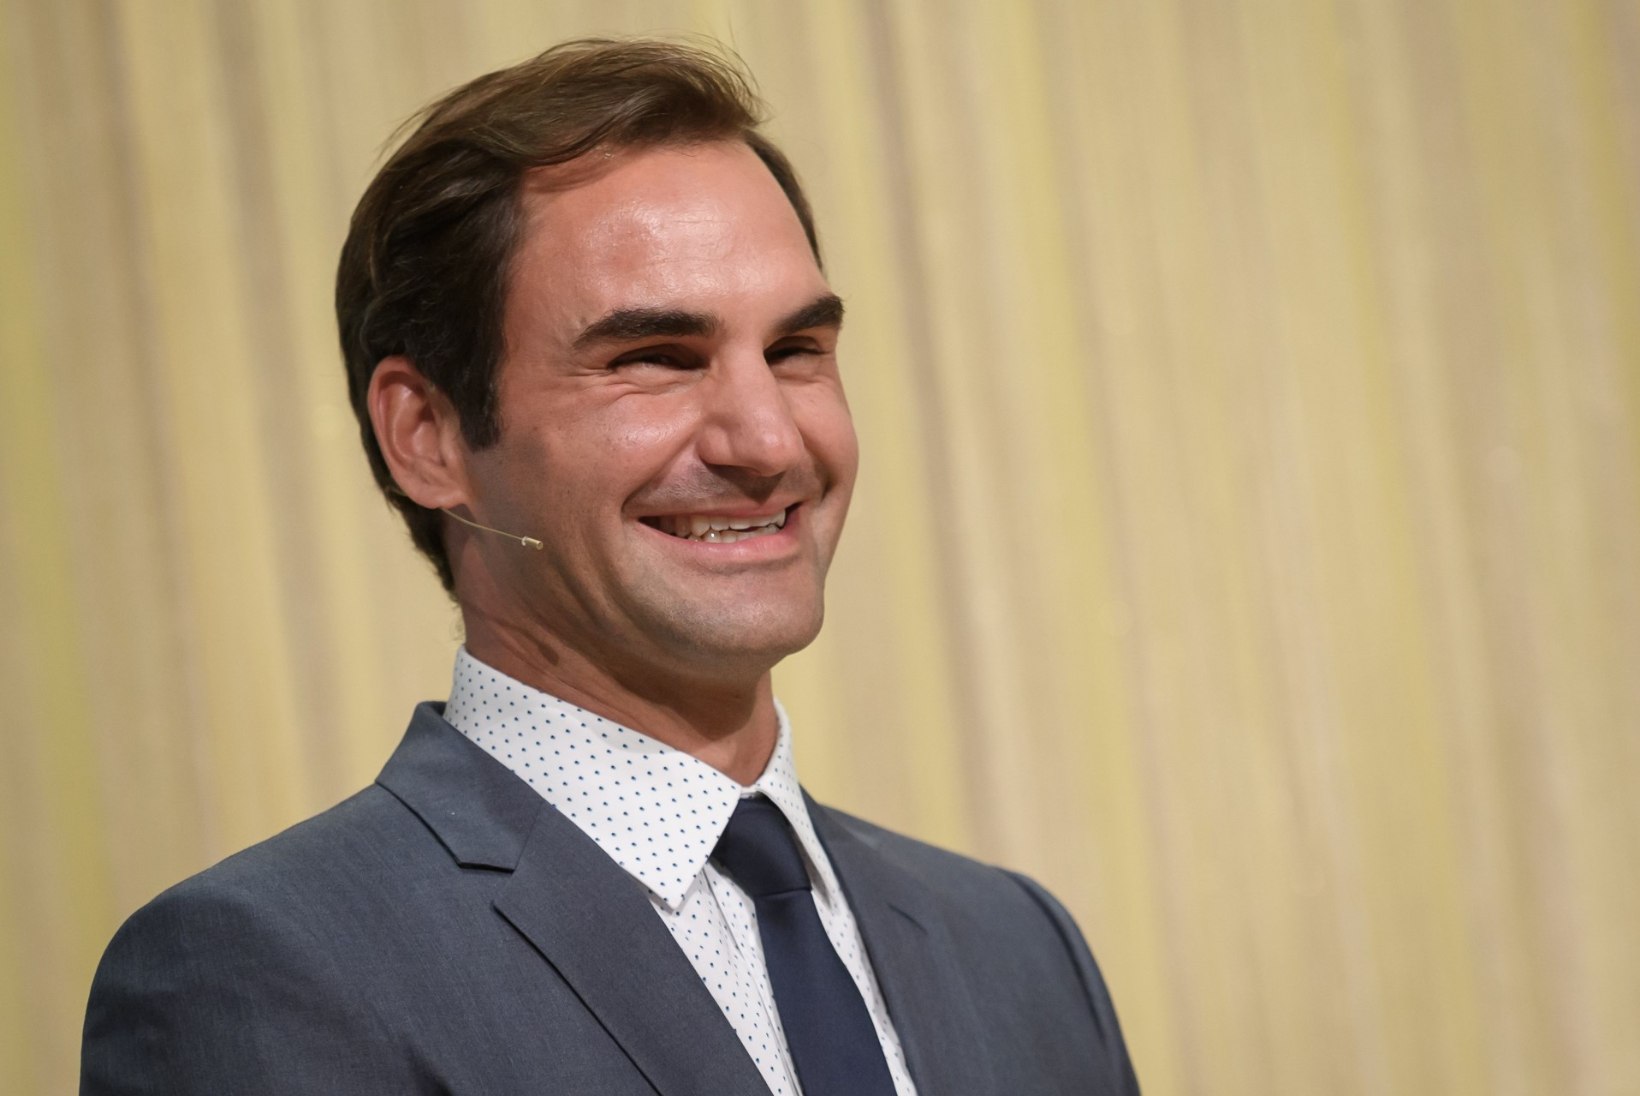 VINGE TASE: Roger Federer püstitas vägeva rekordi